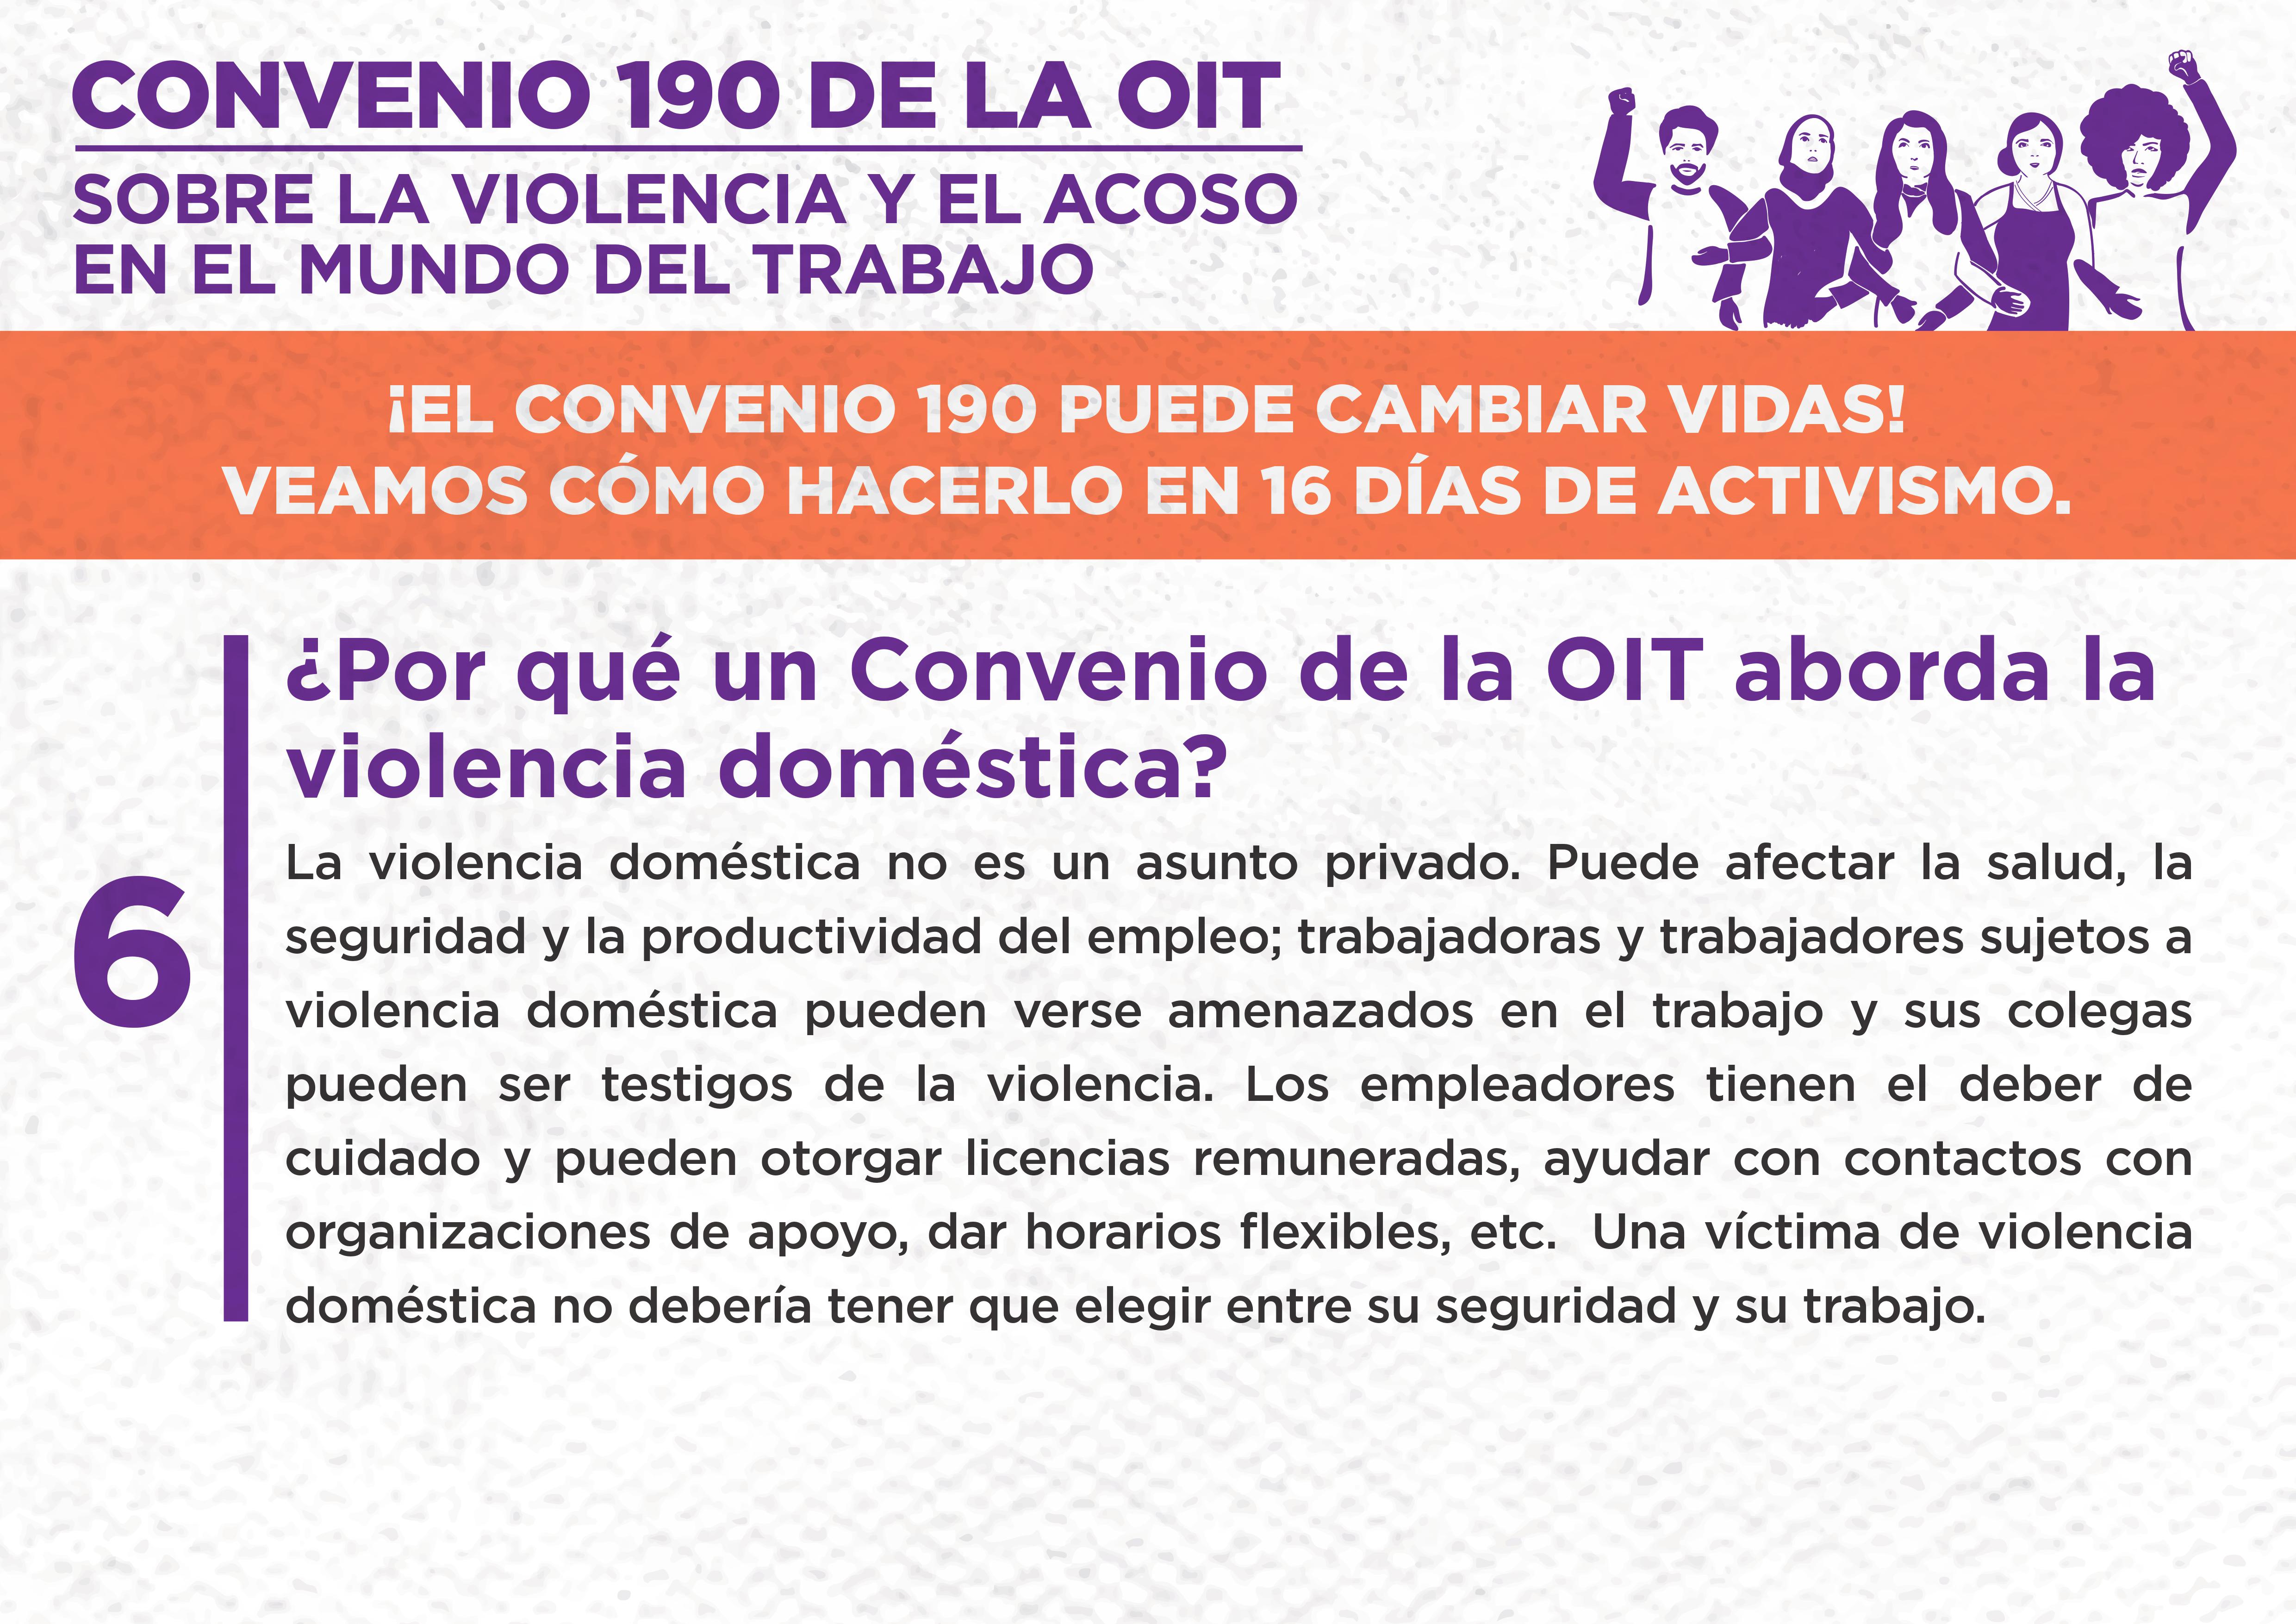 6. ¿Por qué un Convenio de la OIT aborda la violencia doméstica?